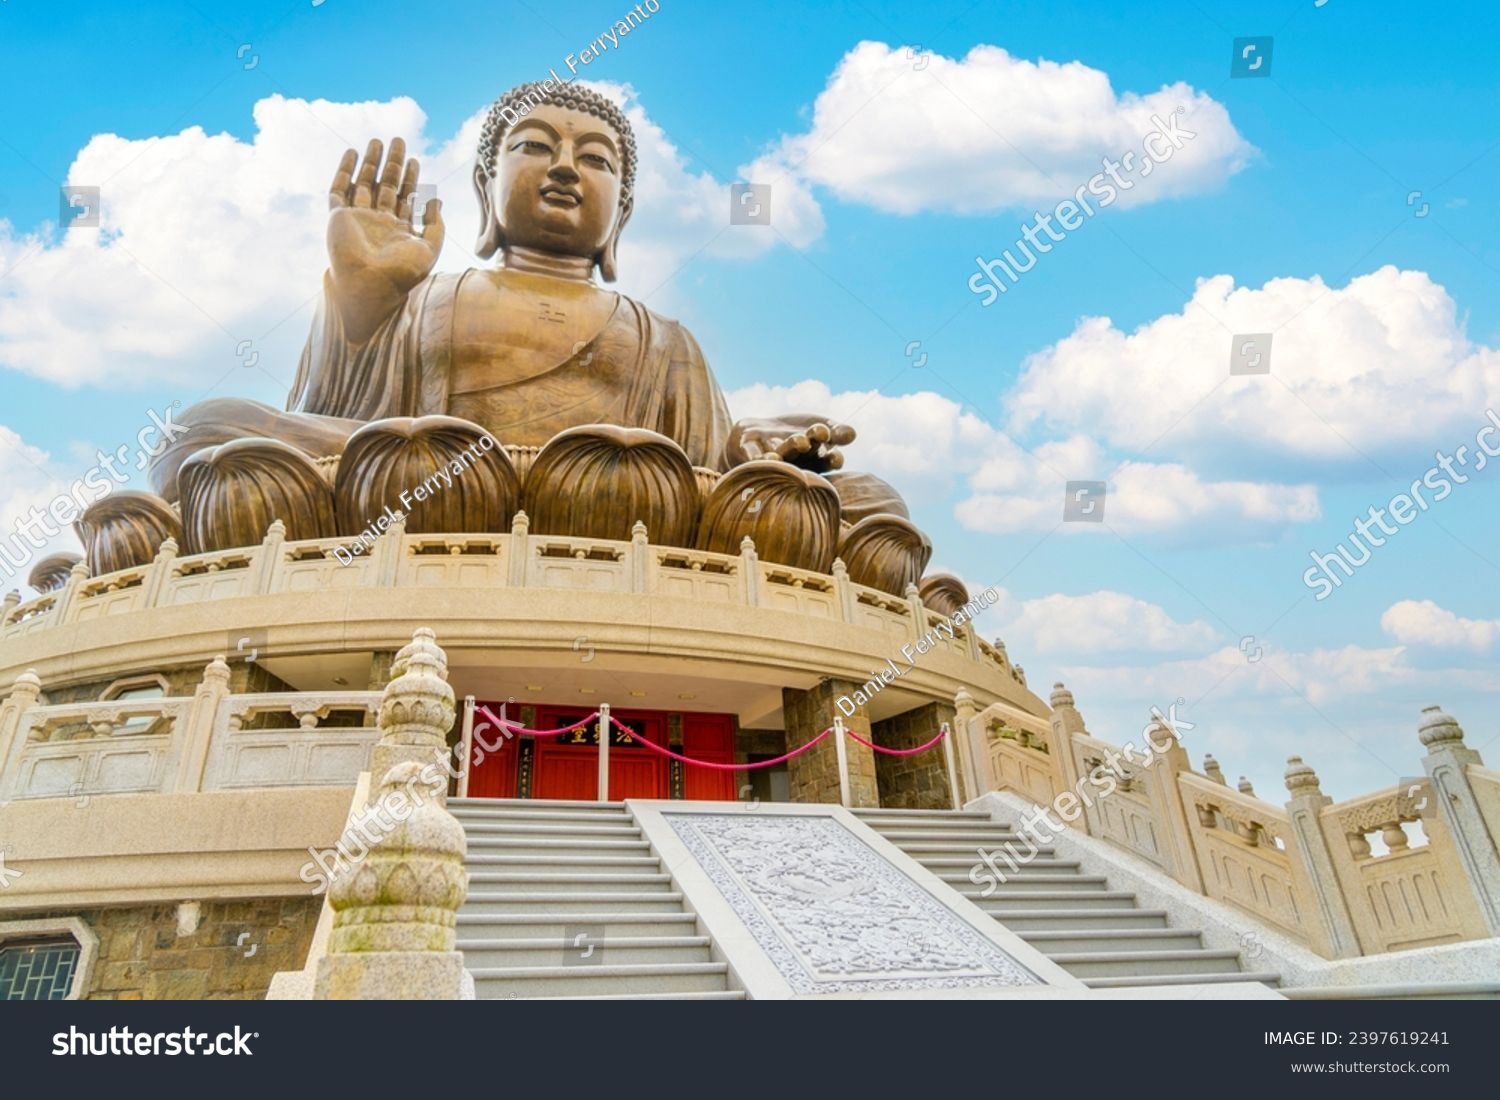 TIan Tan buddha at the Po Lin monastery in Ngong Ping, Lantau island, Hong Kong, China #2397619241